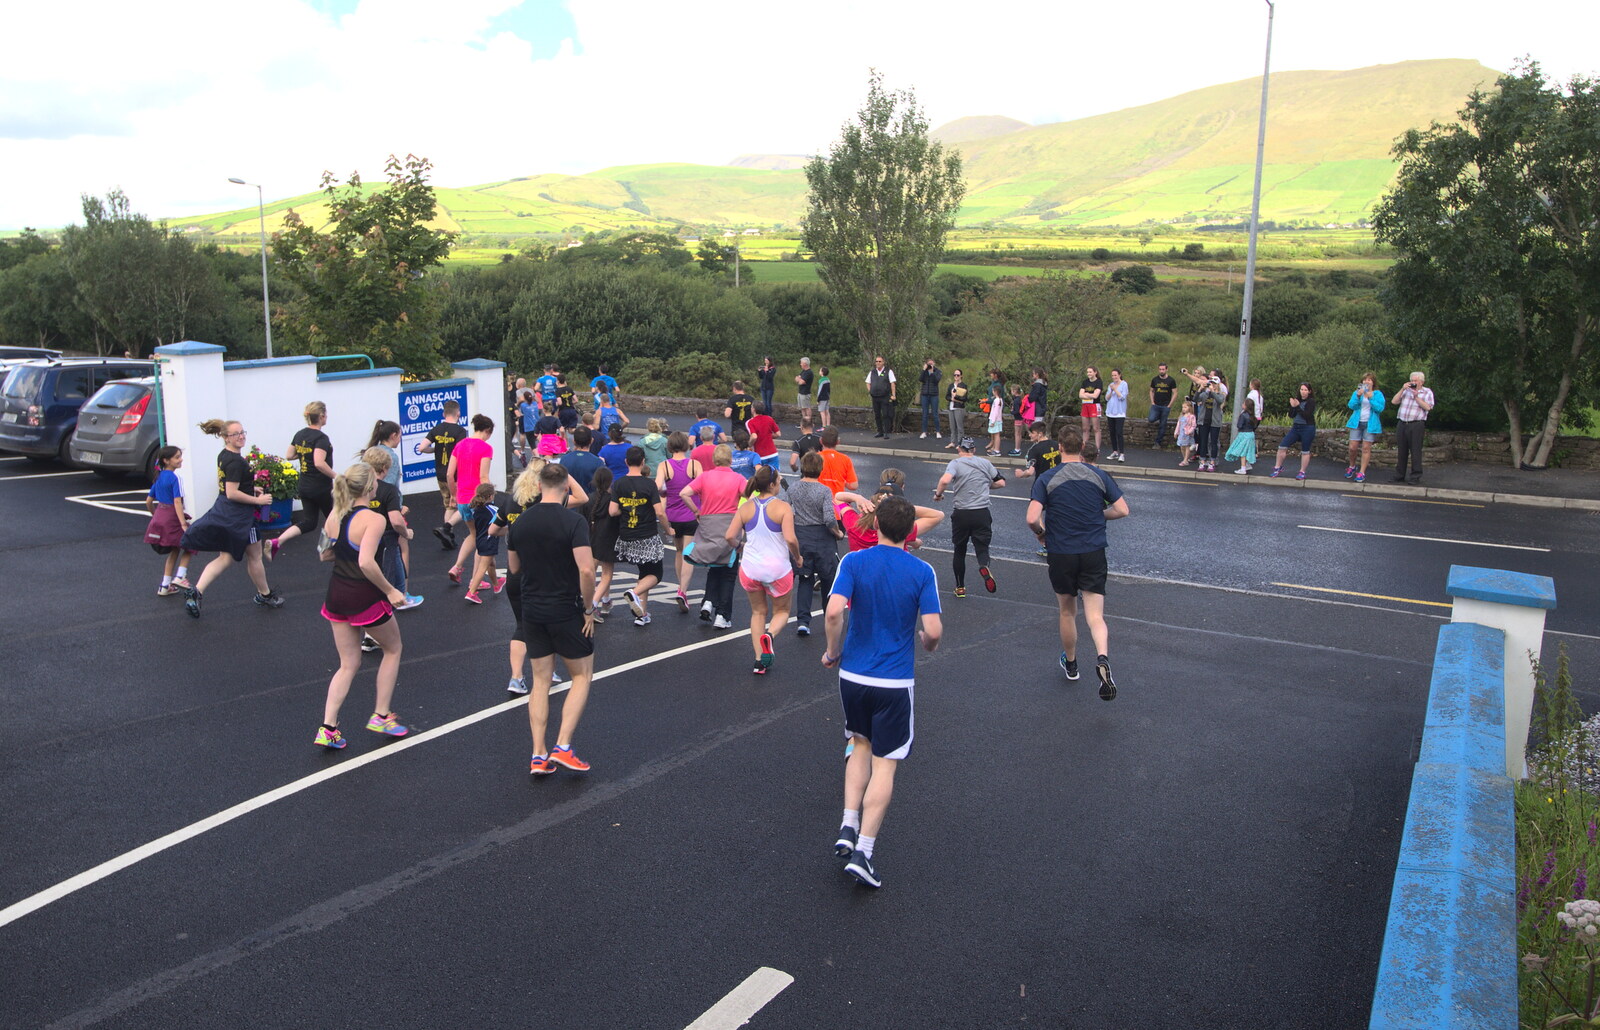 The serious runners head off from The Annascaul 10k Run, Abha na Scáil, Kerry, Ireland - 5th August 2017